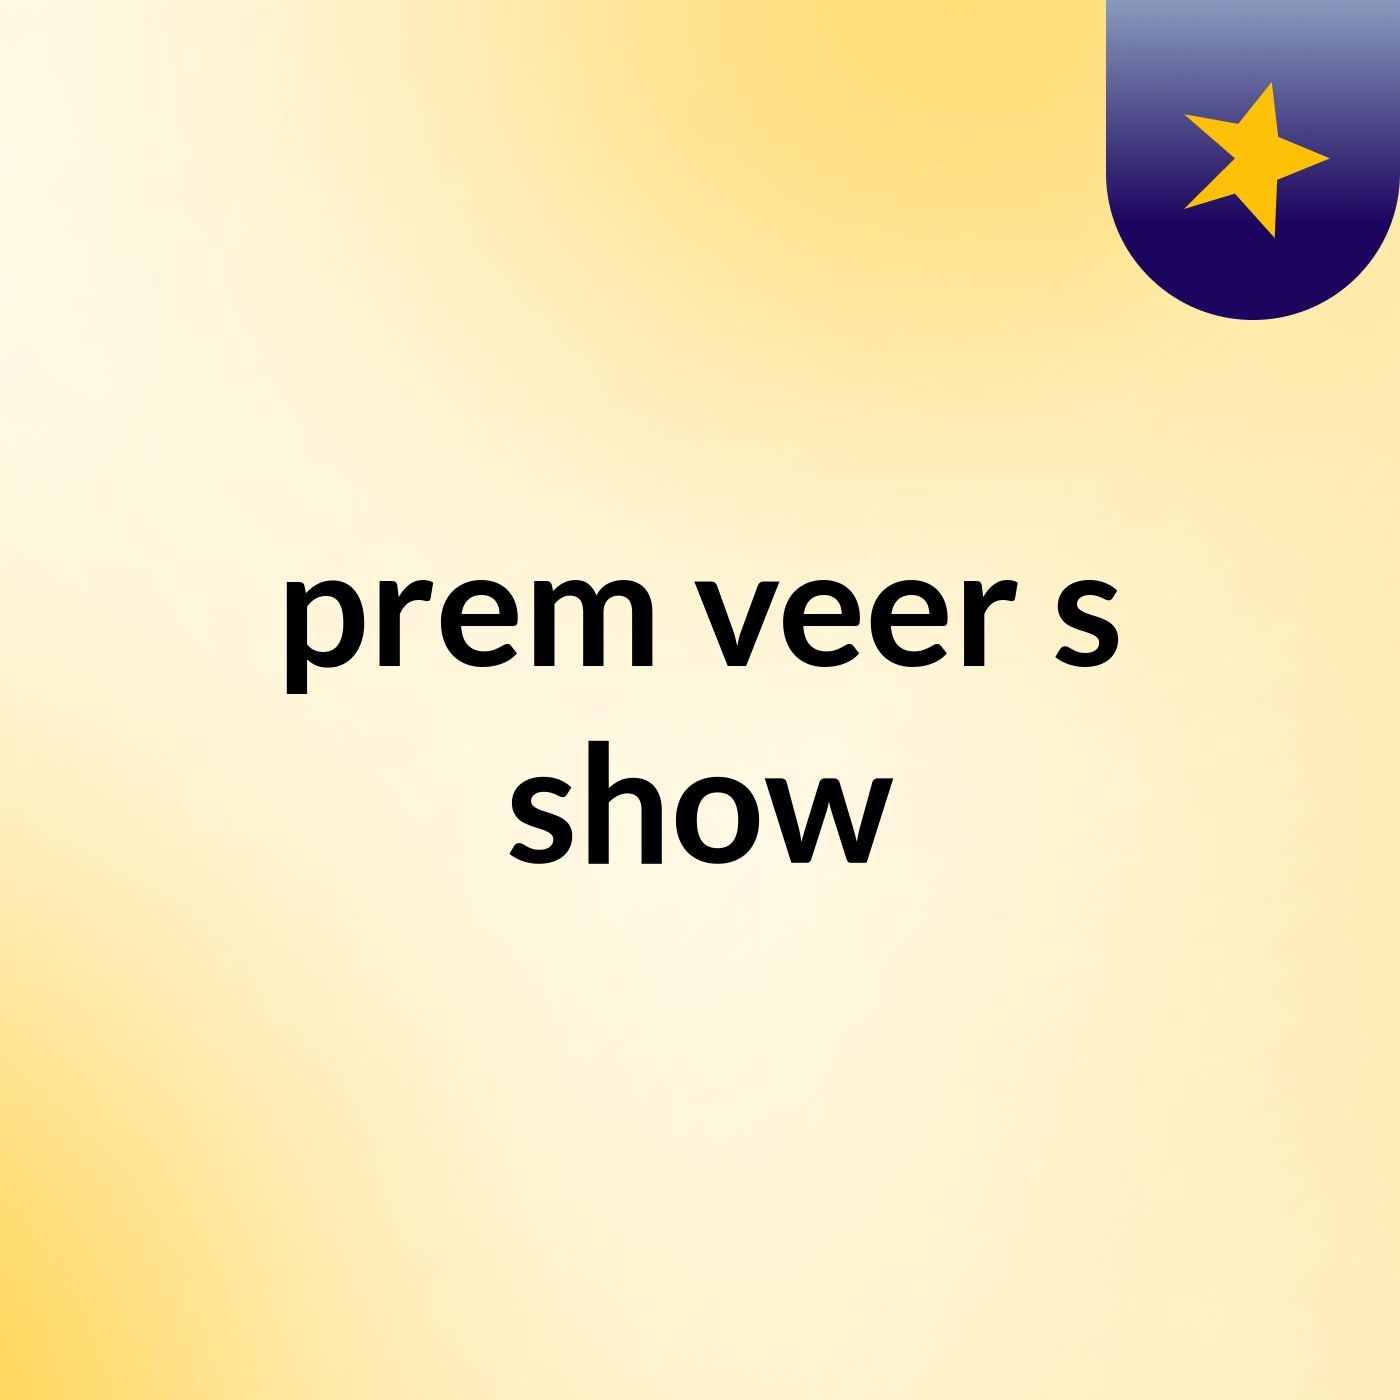 prem veer's show